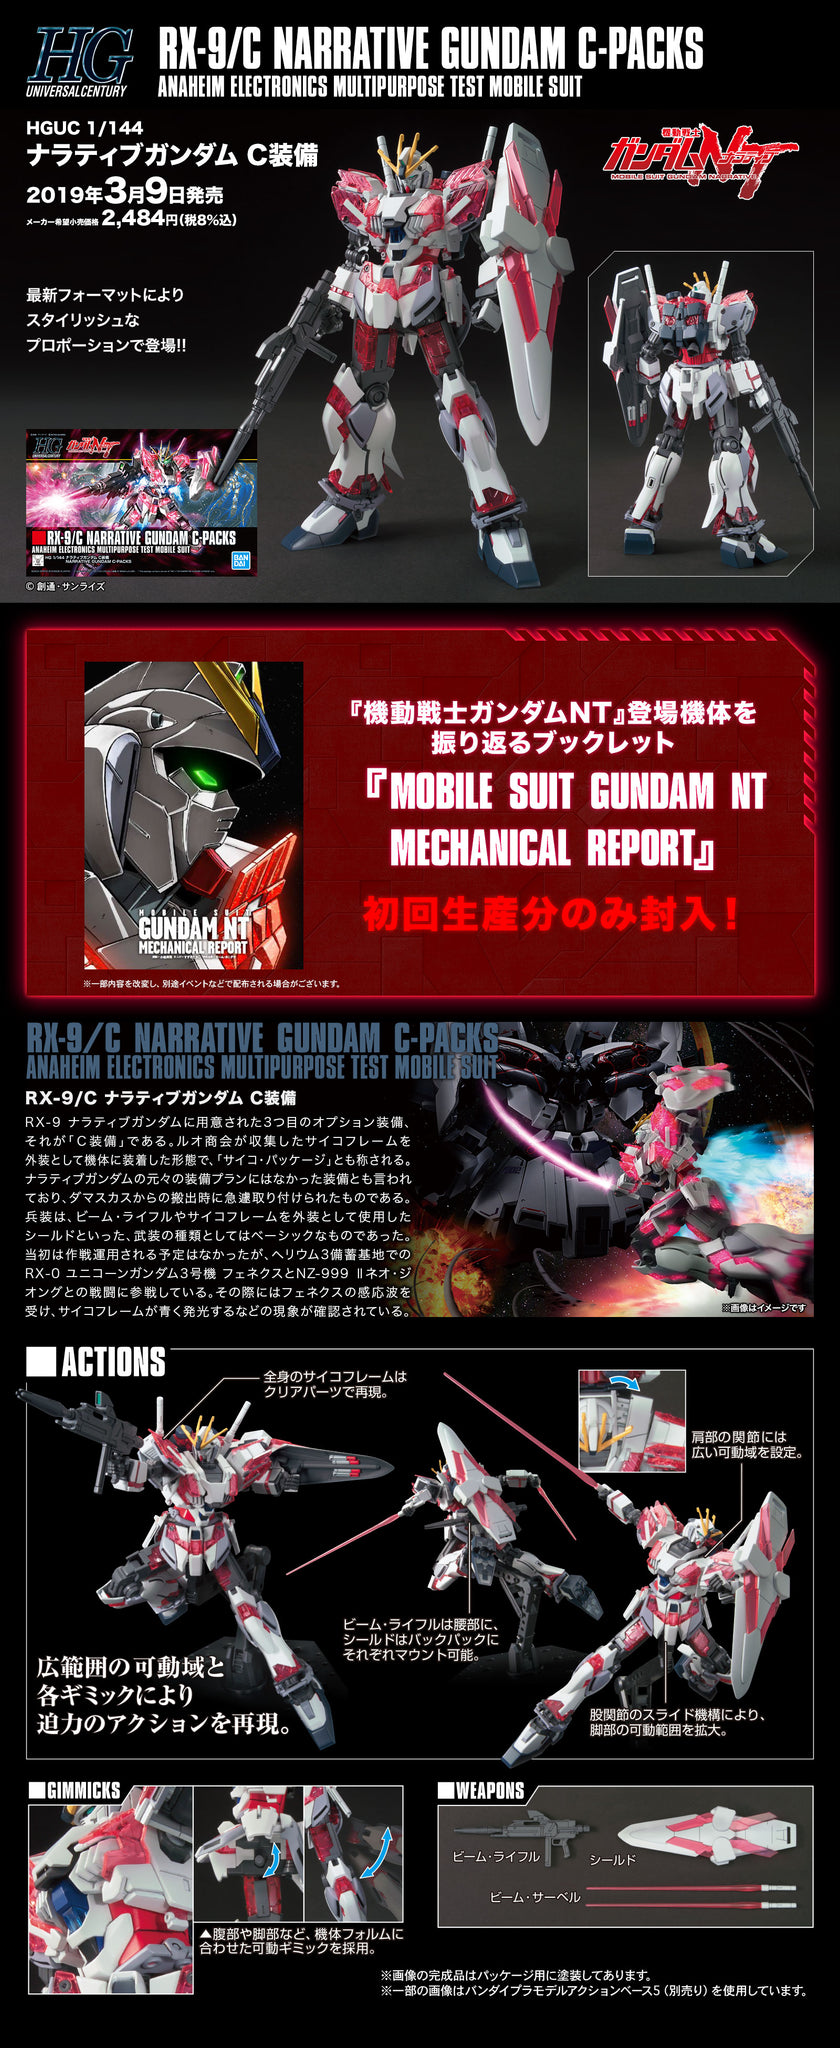 HGUC 1/144 Narrative Gundam C-Packs